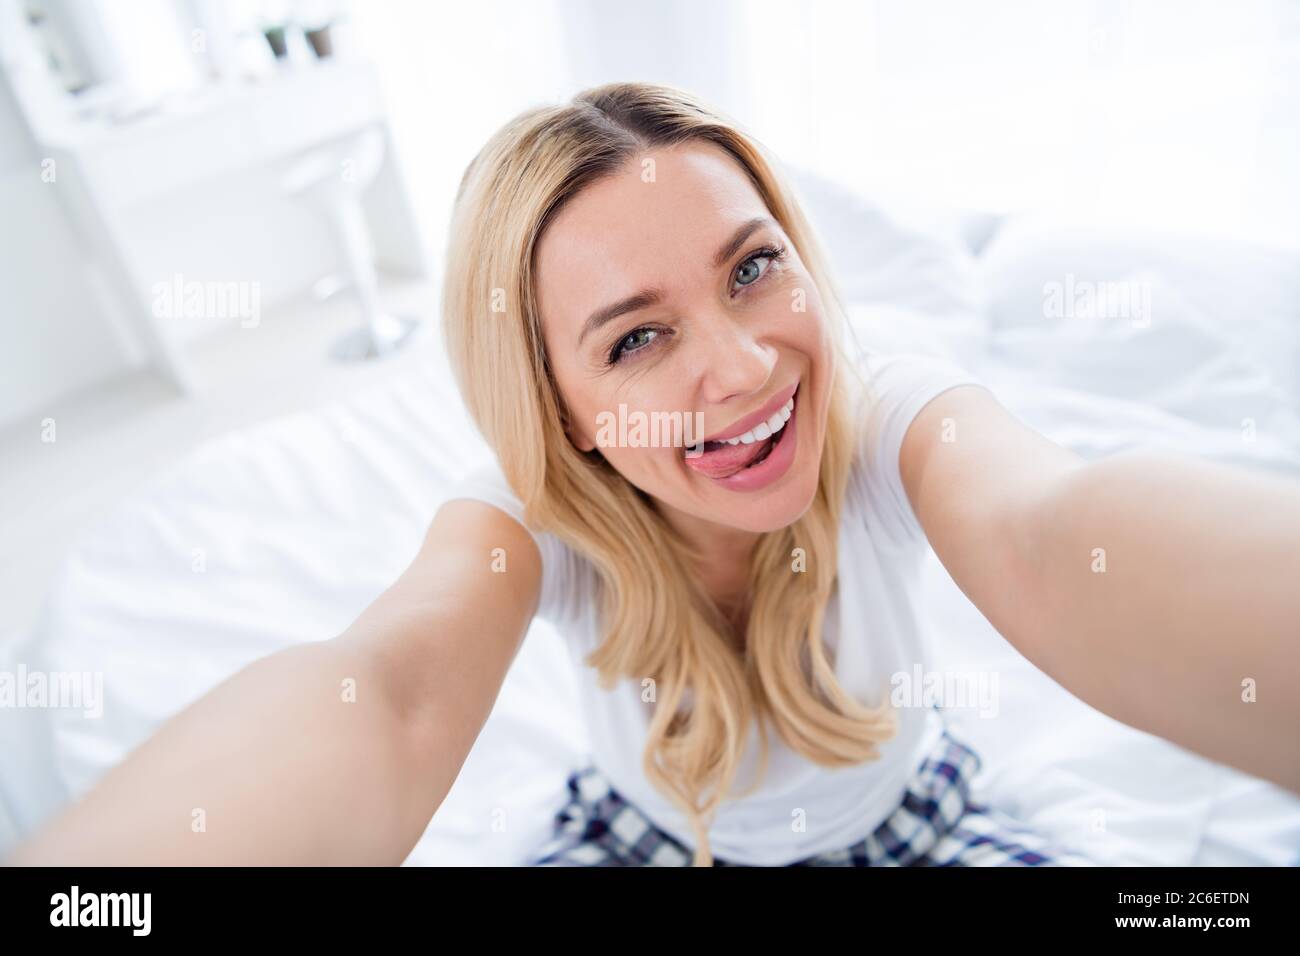 women oral selfies